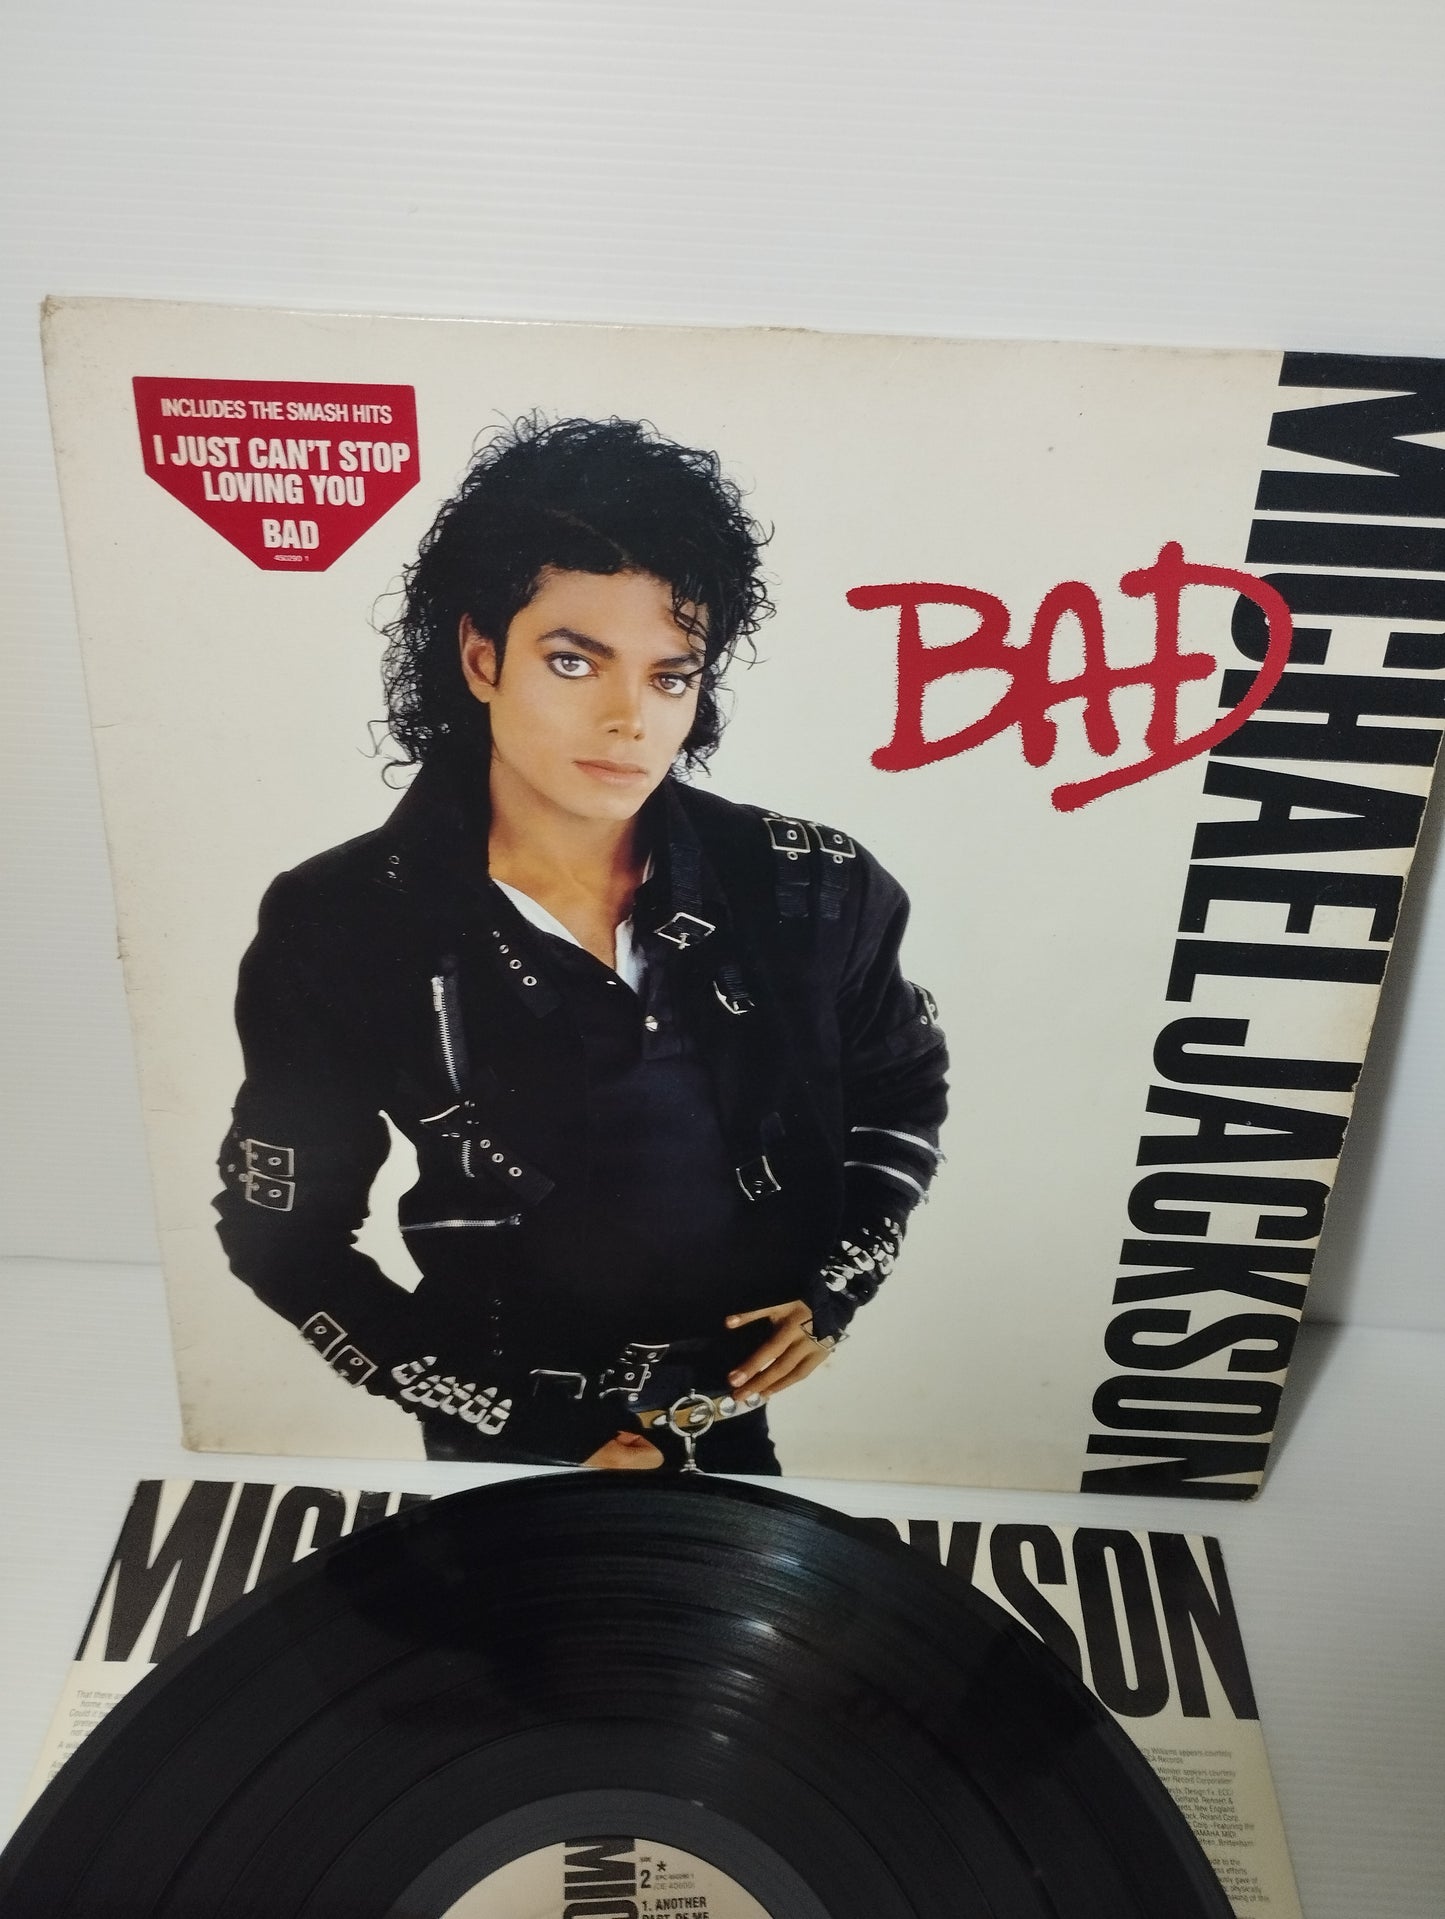 Bad Michael Jackson Lp 33 Giri
Prodotto Nel 1987 da  Epic Cod.EPC 450290 1